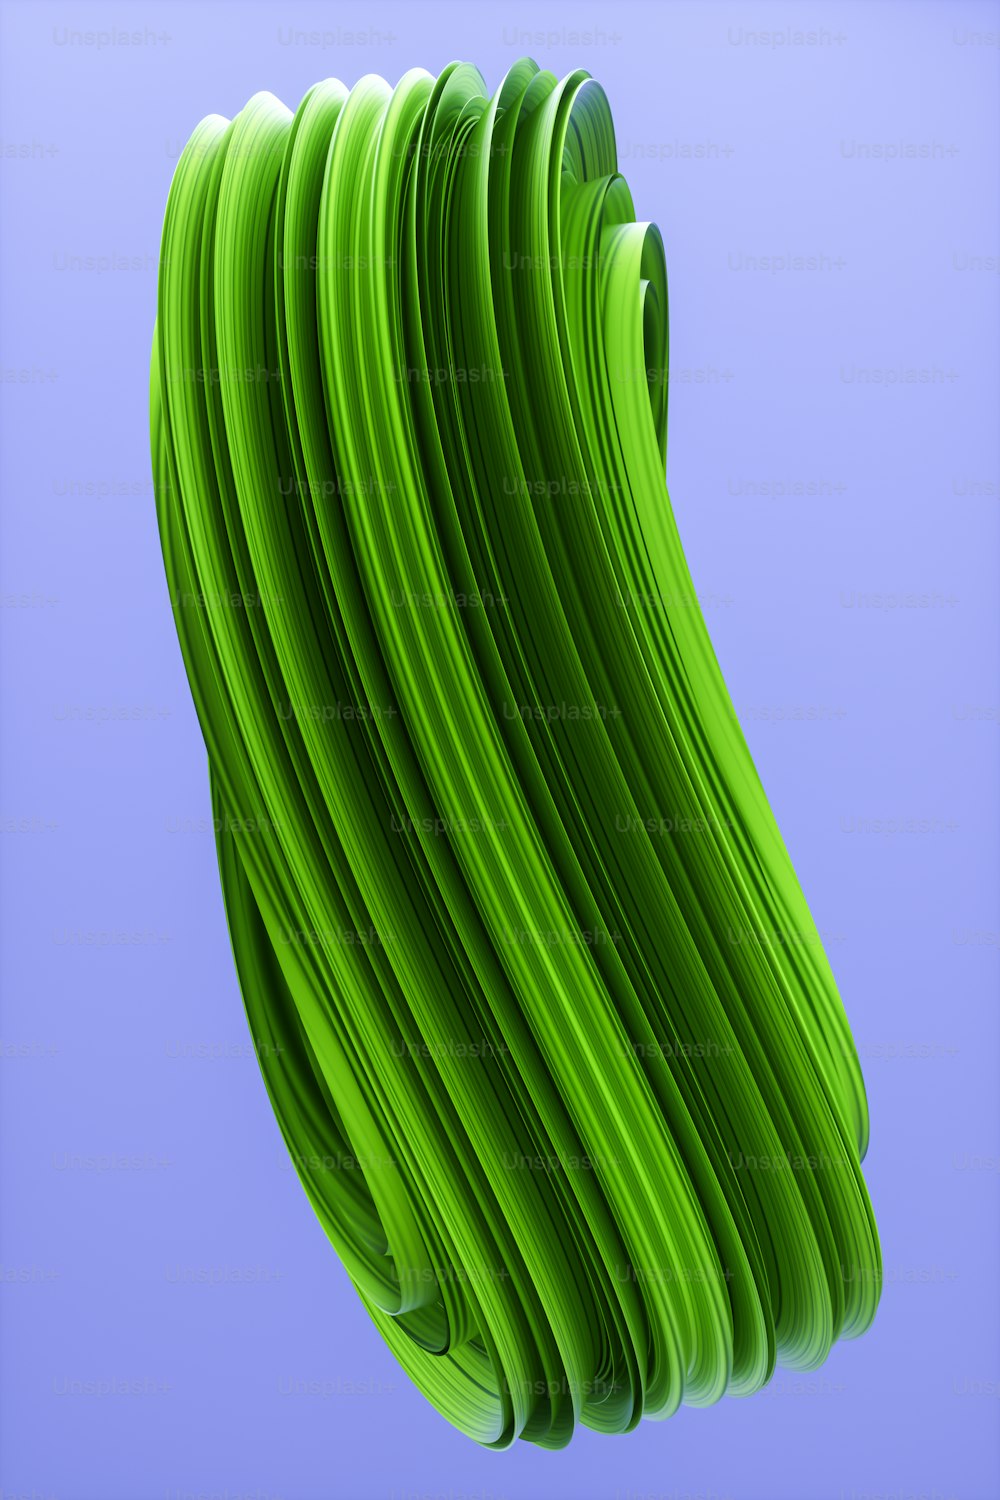 Ein 3D-Rendering eines wellenförmigen grünen Materials